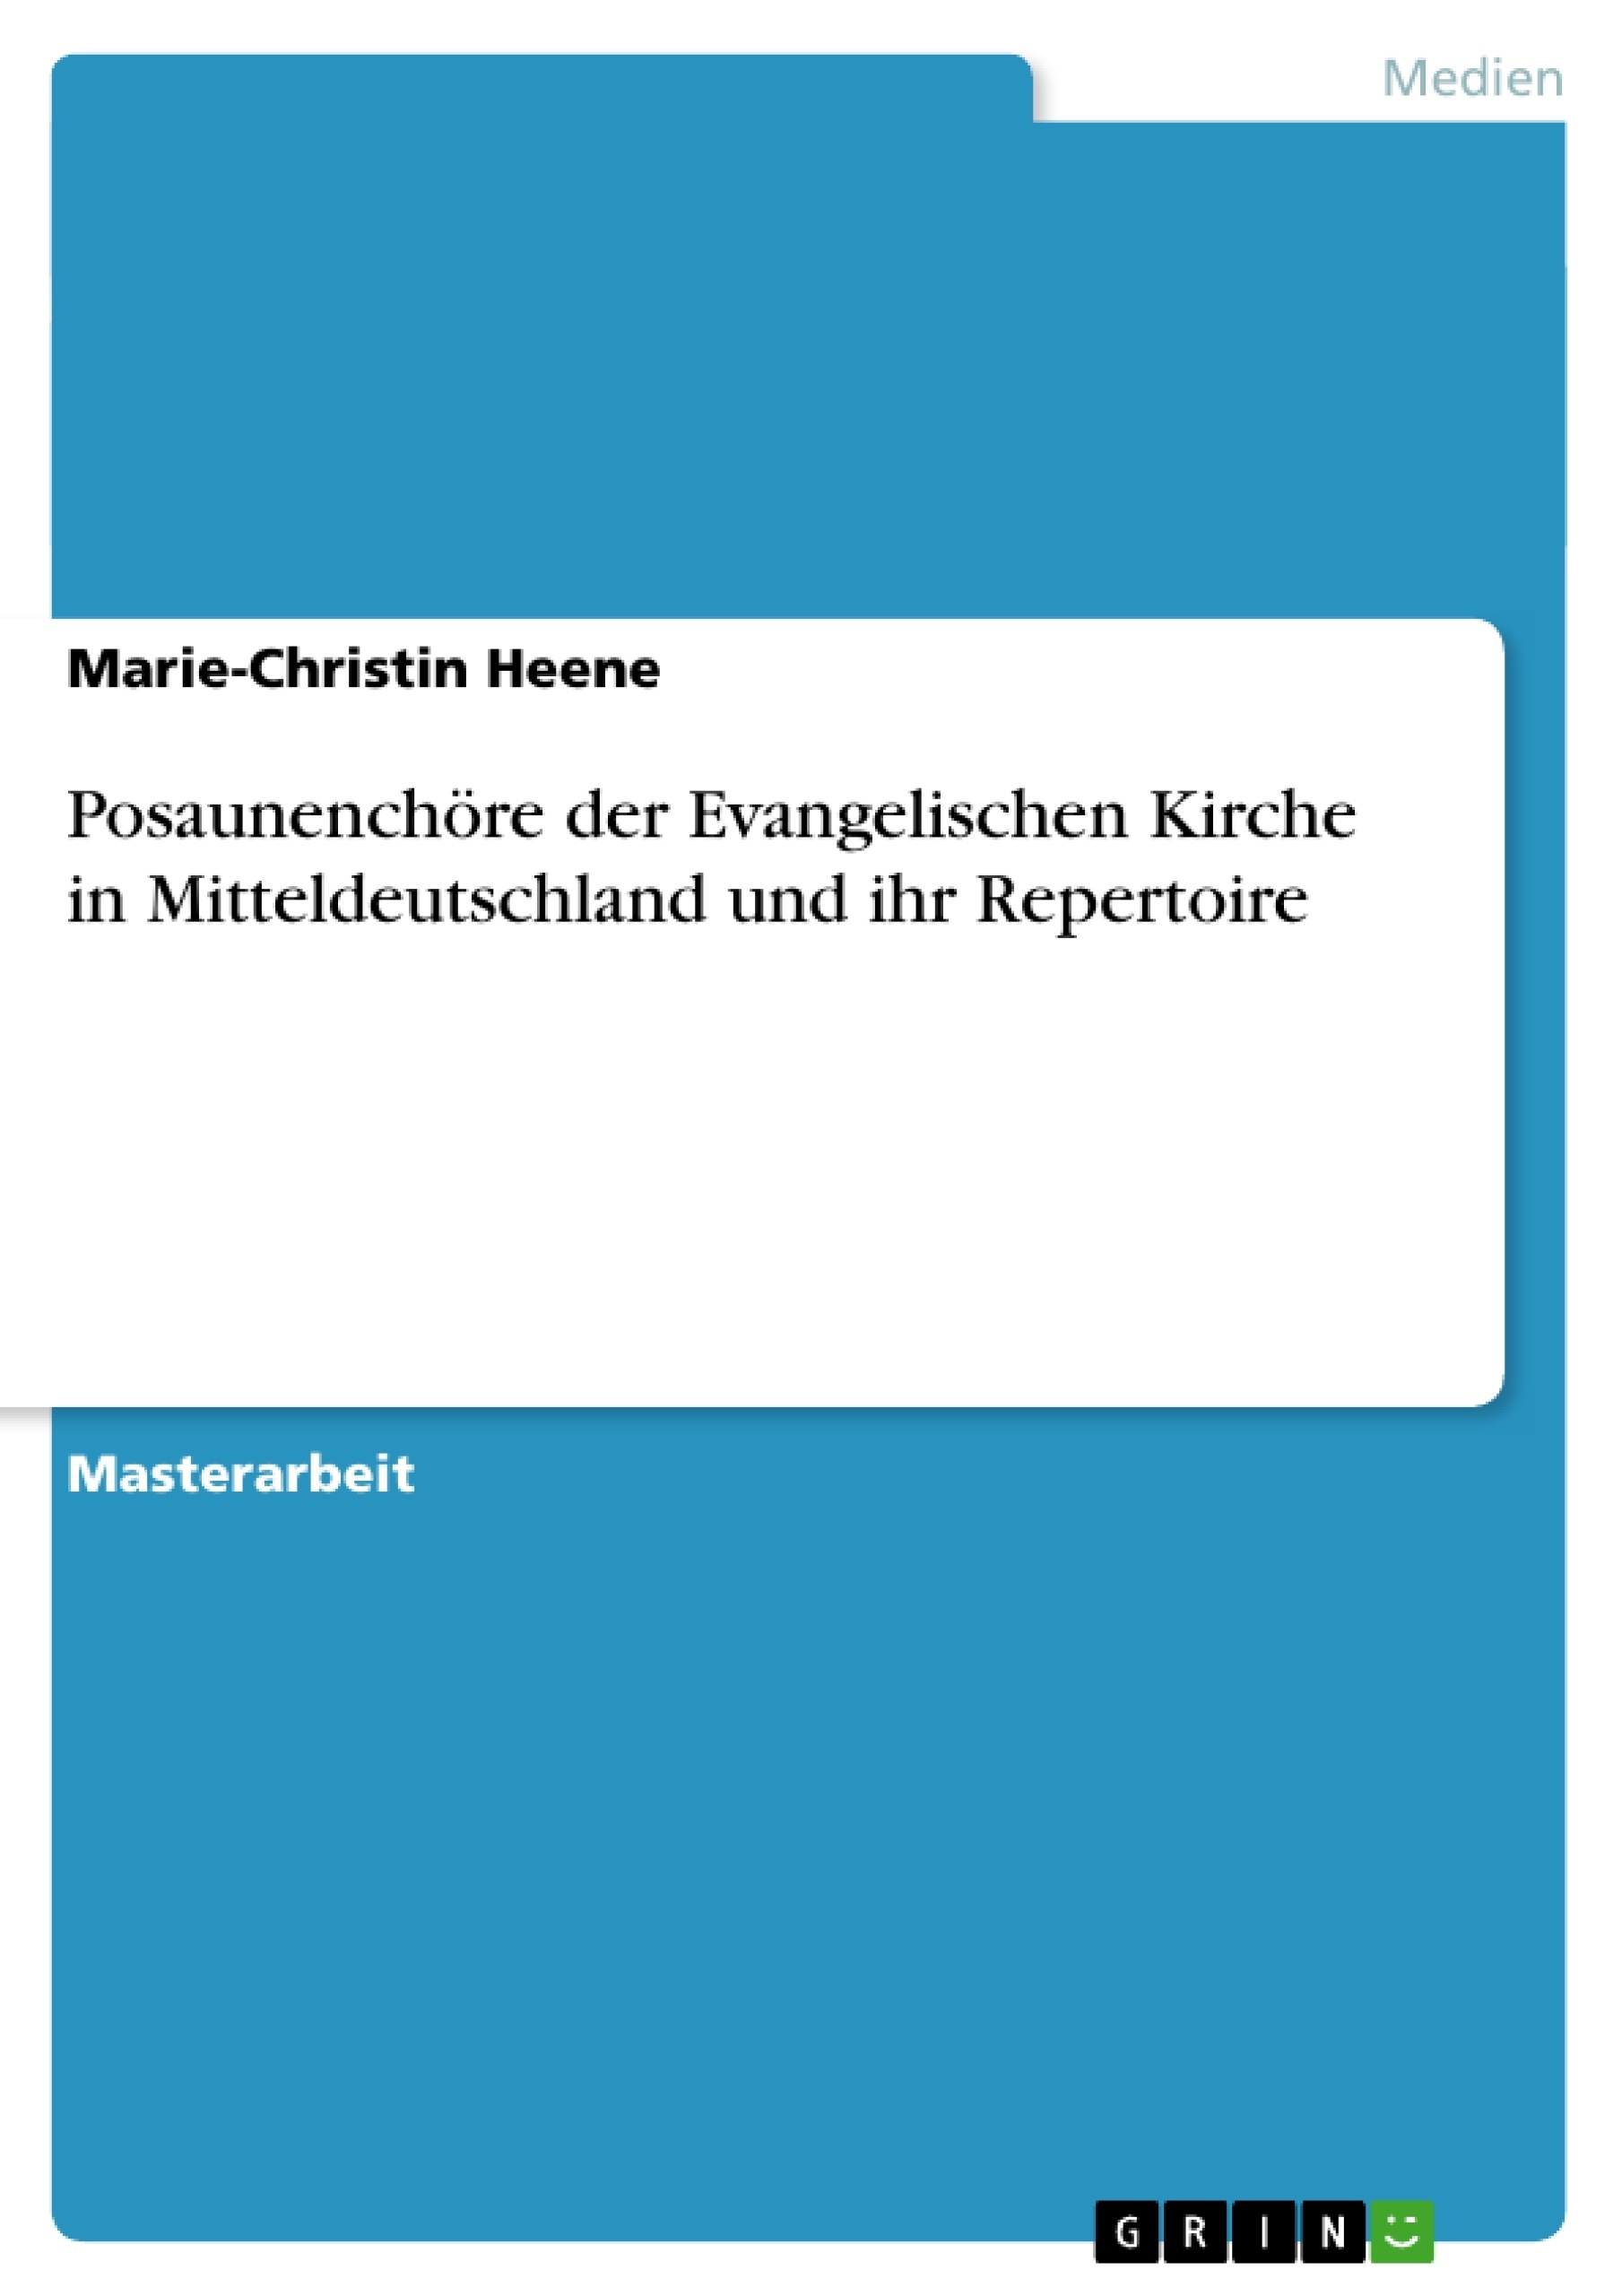 Título: Posaunenchöre der Evangelischen Kirche in Mitteldeutschland und ihr Repertoire